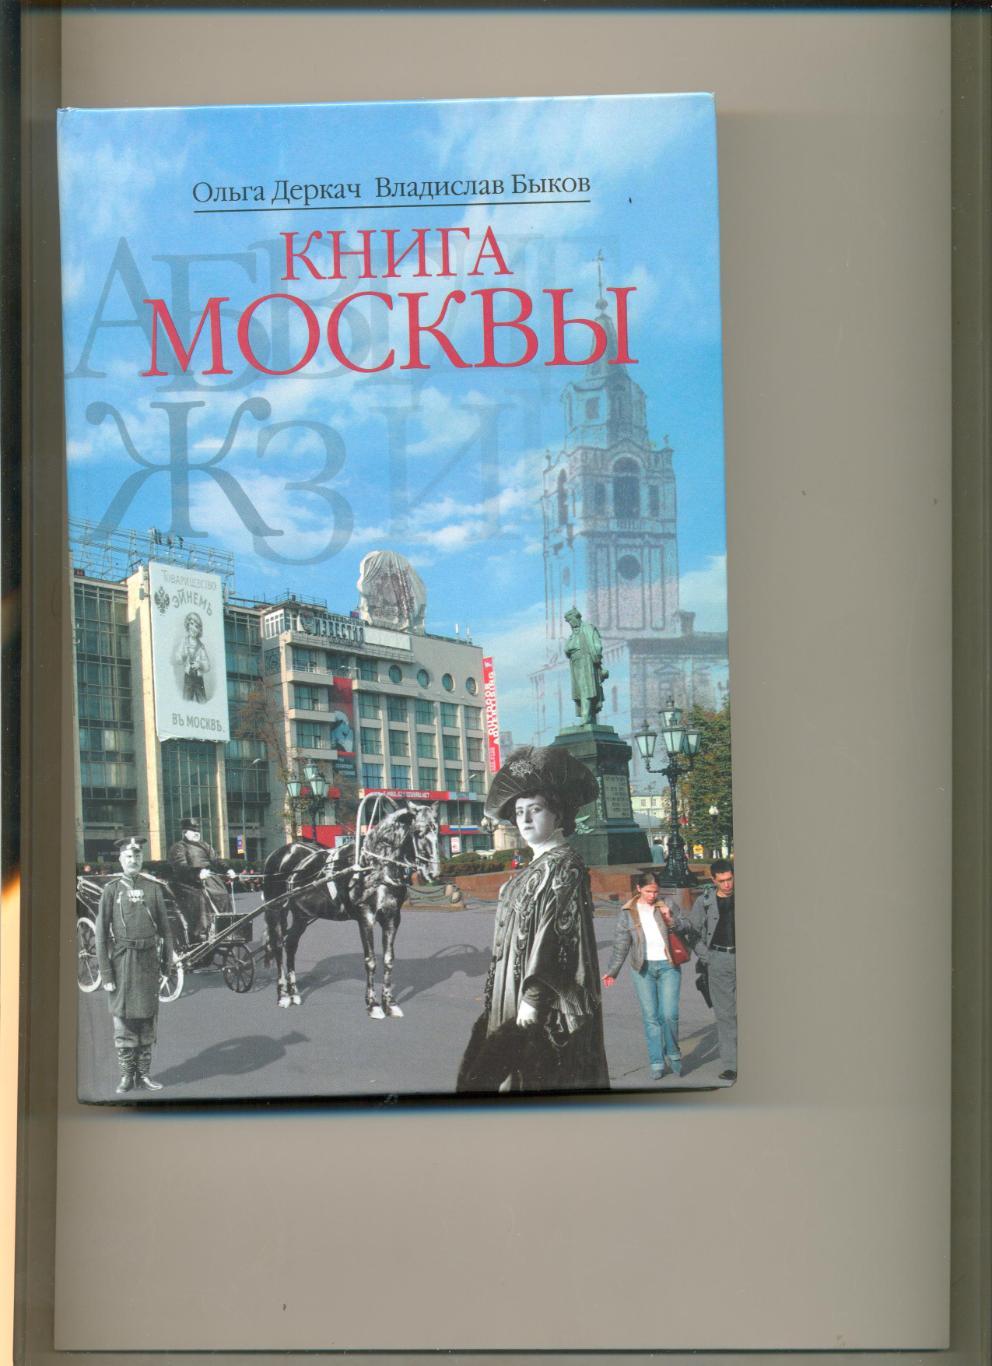 Ольга Деркач, Владислав Быков. Книга Москвы. 2005 г.